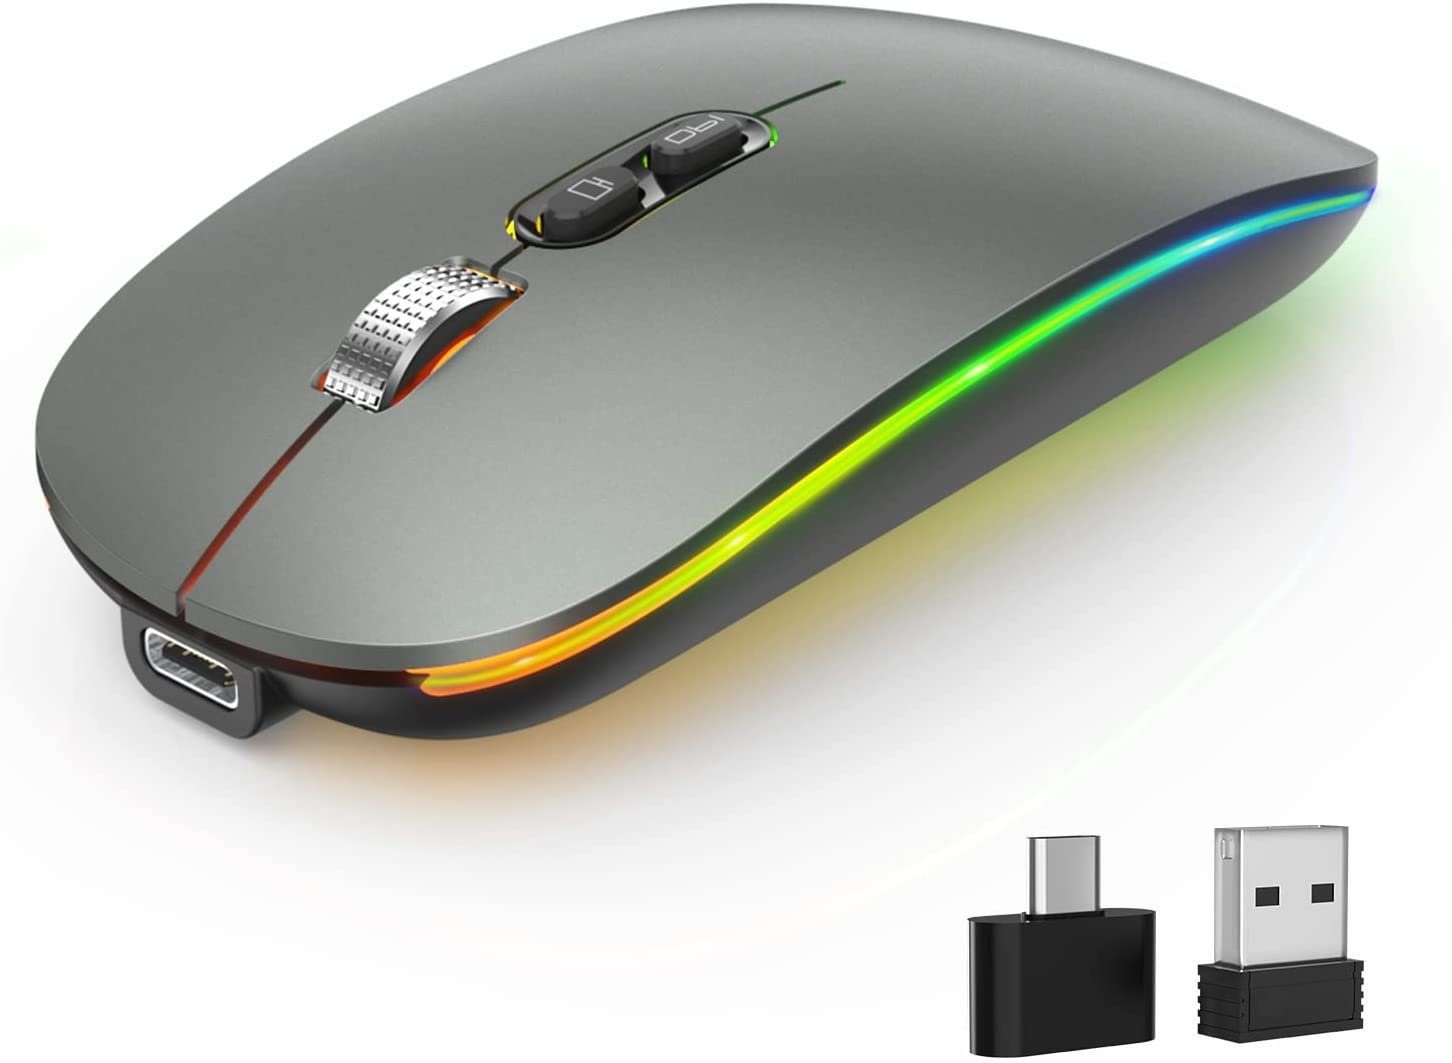 Housruse Drahtlose LED-Maus Silent 2.4G wiederaufladbare Laptop- Computer-Maus Maus